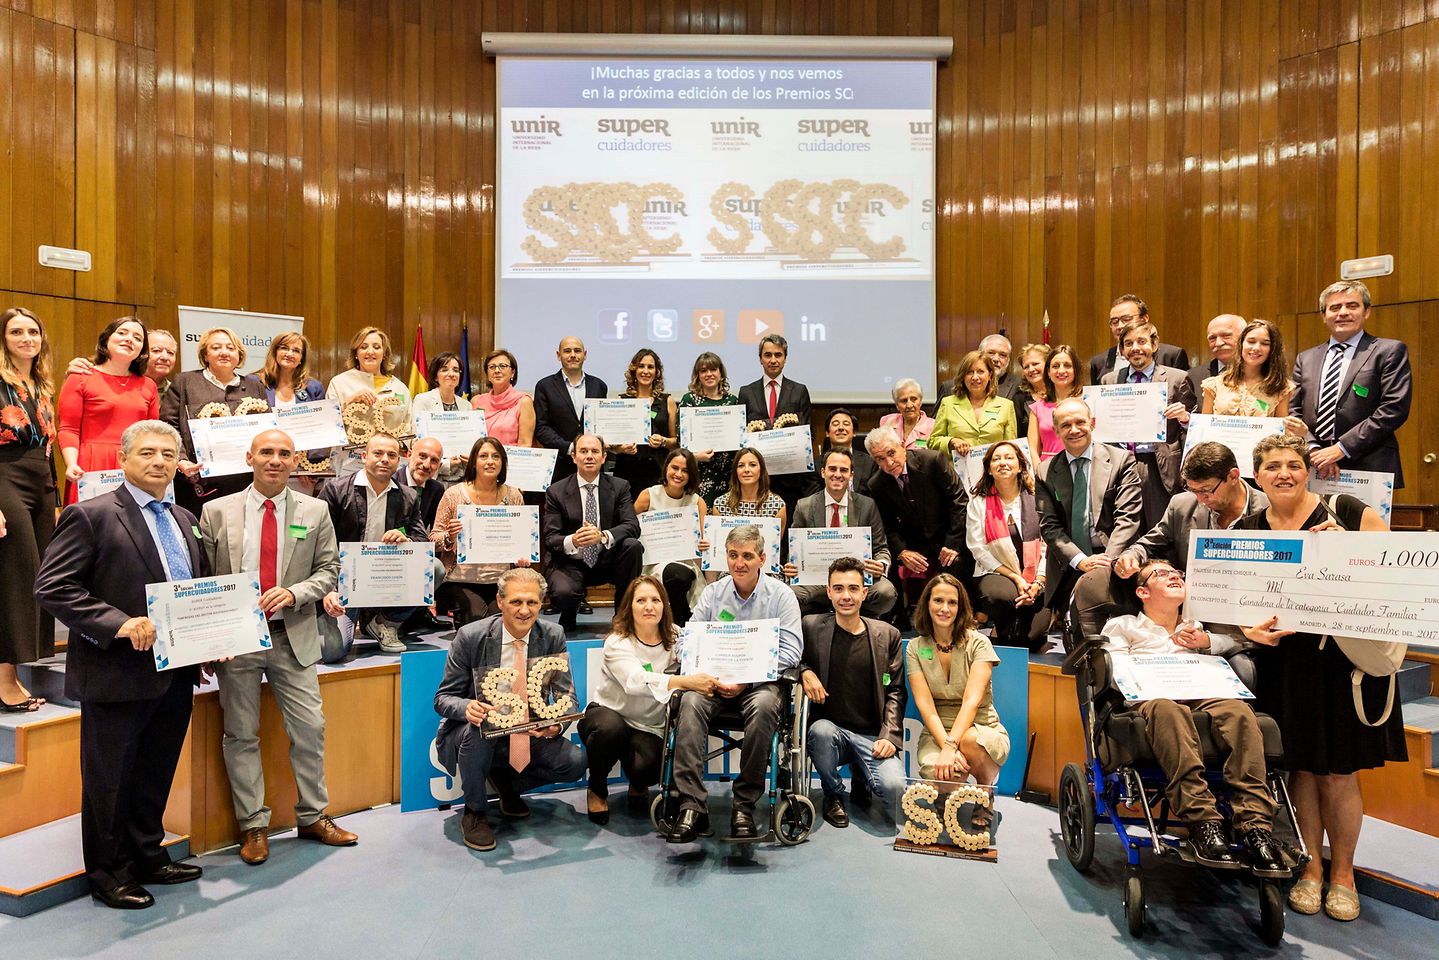 
Ganadores y finalistas de la III Edición de los Premios SUPER Cuidadores